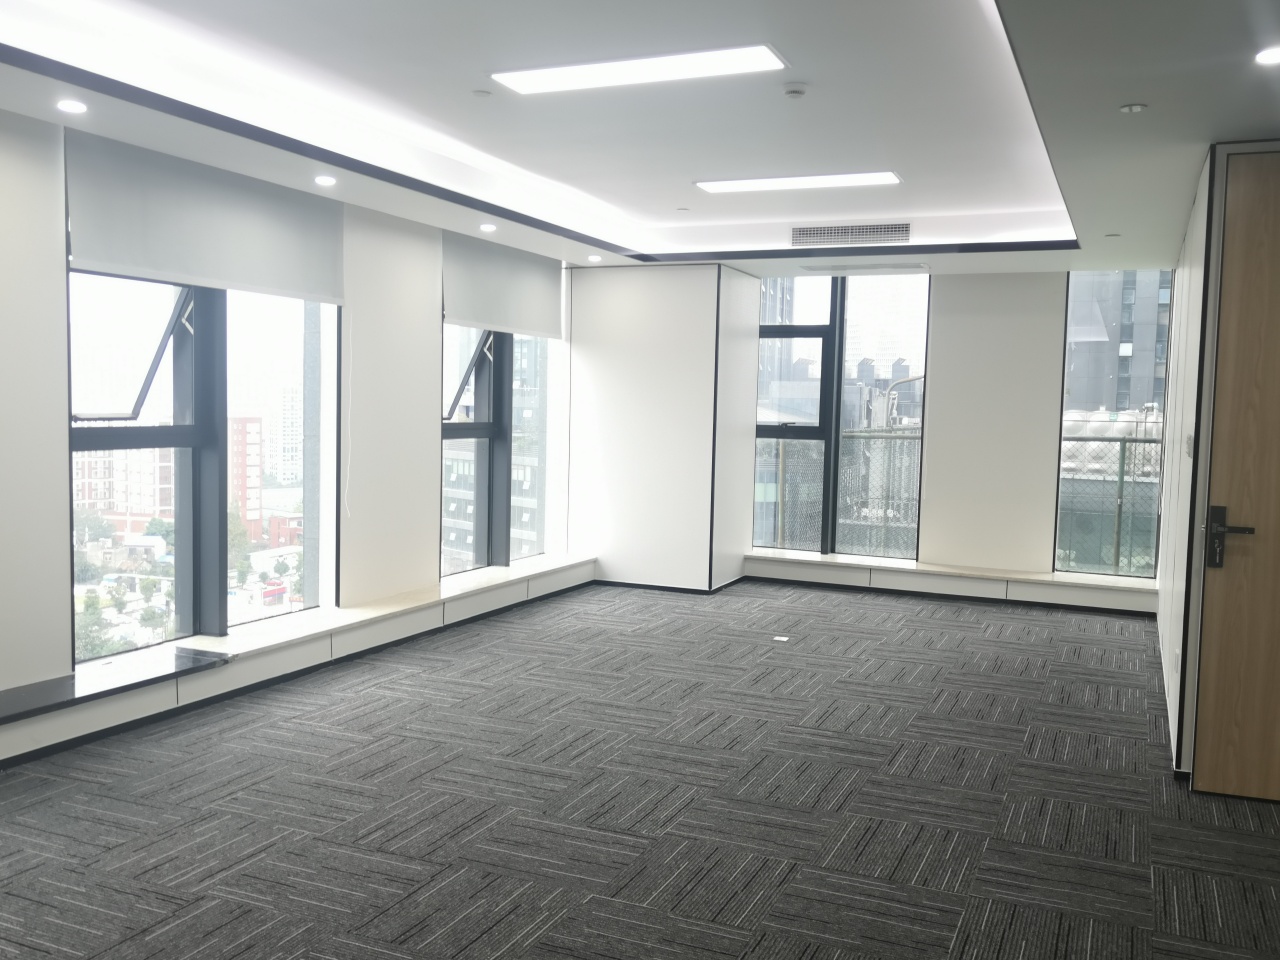 锦江区汇融广场538平精装办公室带家具出租 户型方正 大面积